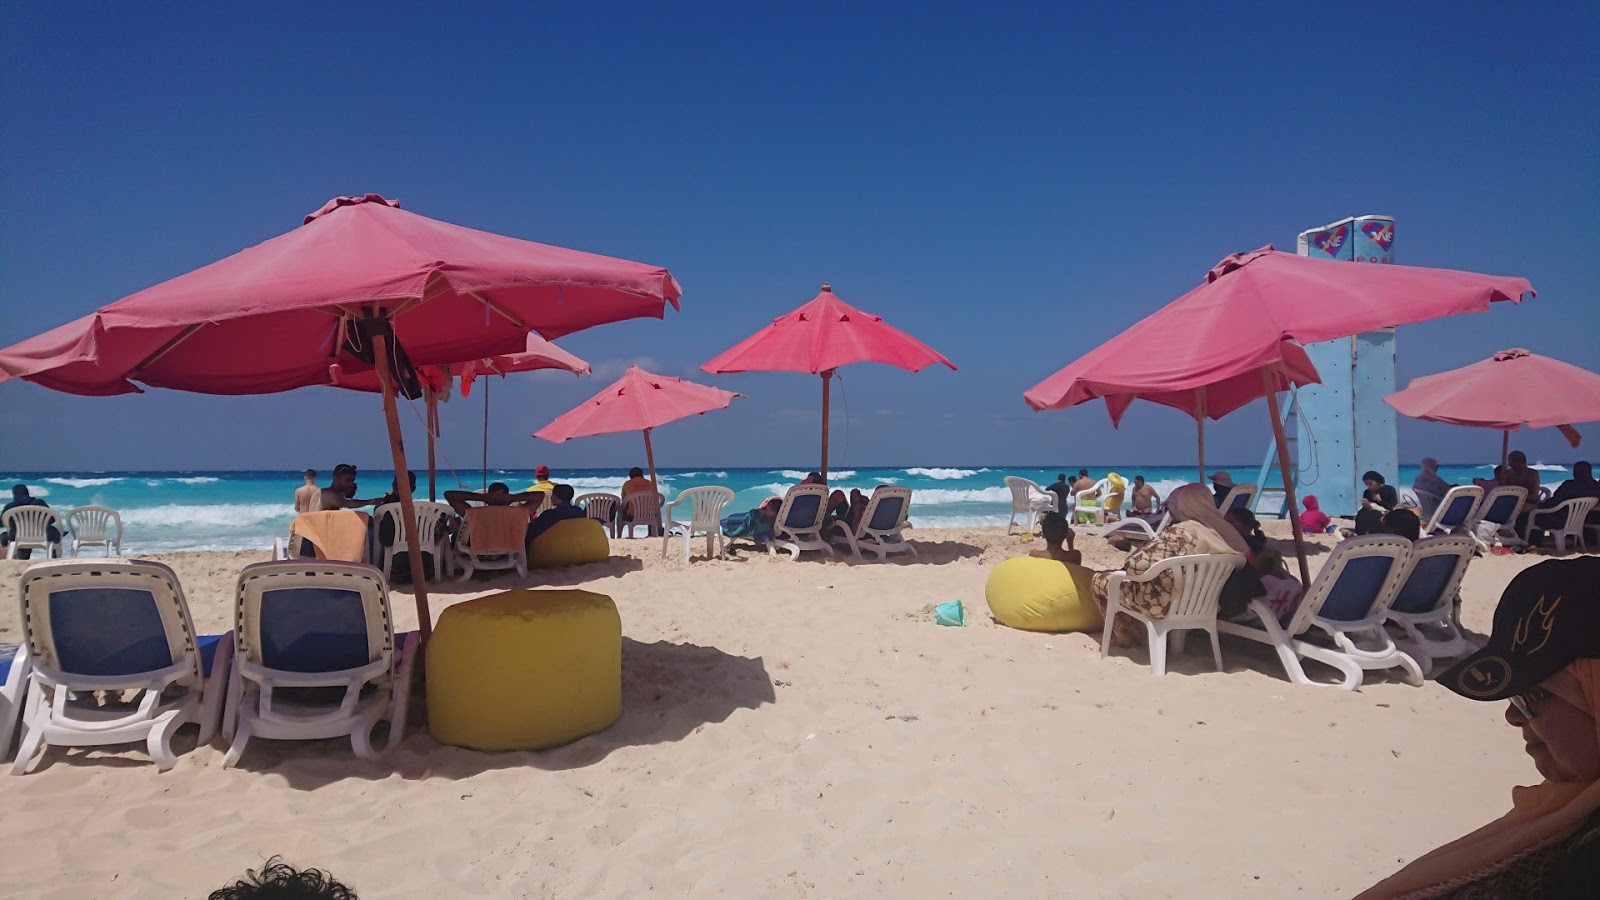 Foto af Blue Sand beach - populært sted blandt afslapningskendere